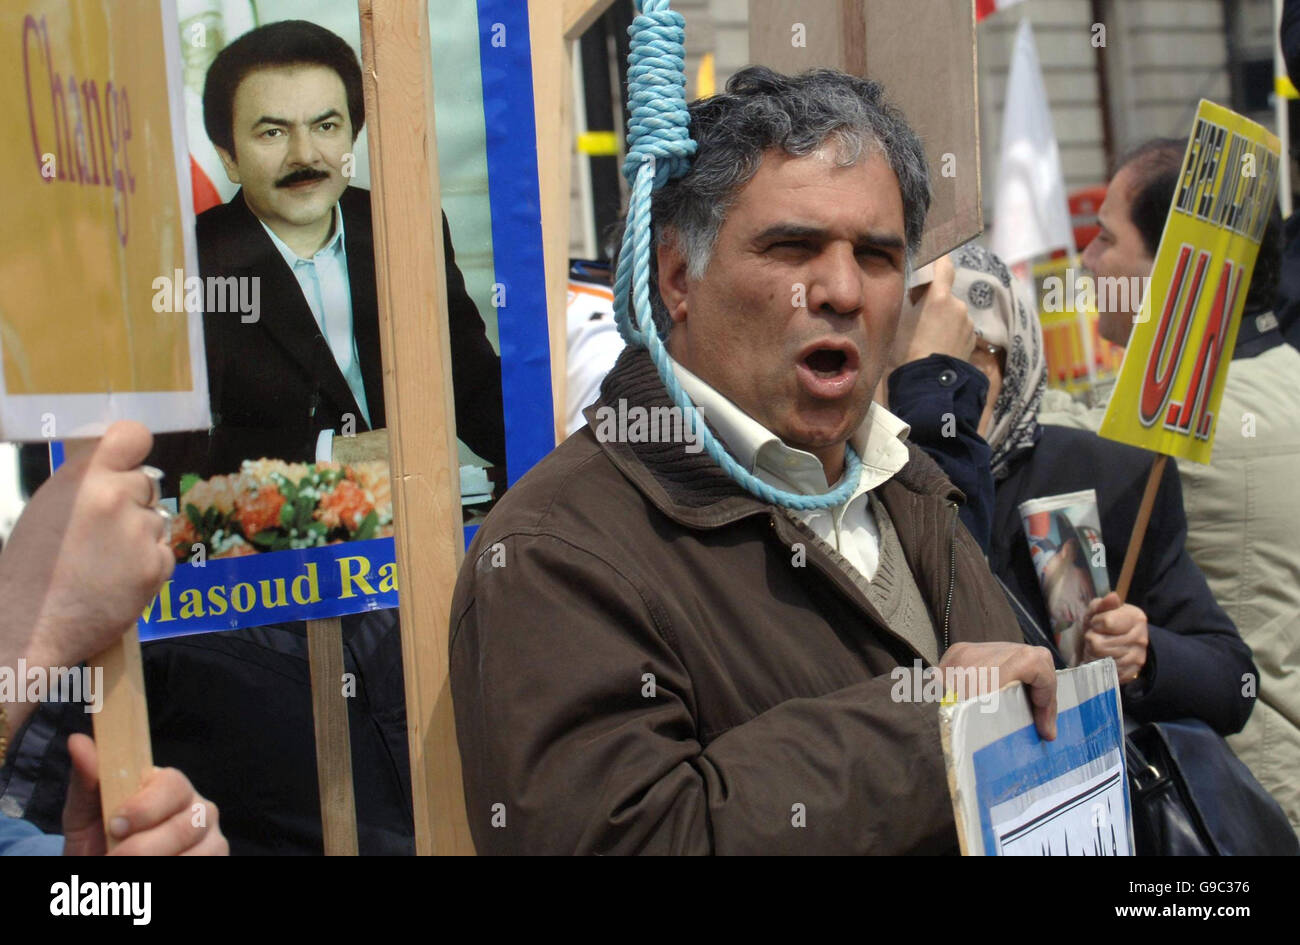 I membri del movimento di resistenza iraniano manifestano nella Piazza del Parlamento di Londra, chiedendo al governo e al Consiglio di sicurezza delle Nazioni Unite di "mettere fine al terrorismo sfrenato dei mullah" contro cittadini iracheni innocenti e rifugiati politici iraniani nella città di Ashraf in Iraq. Foto Stock